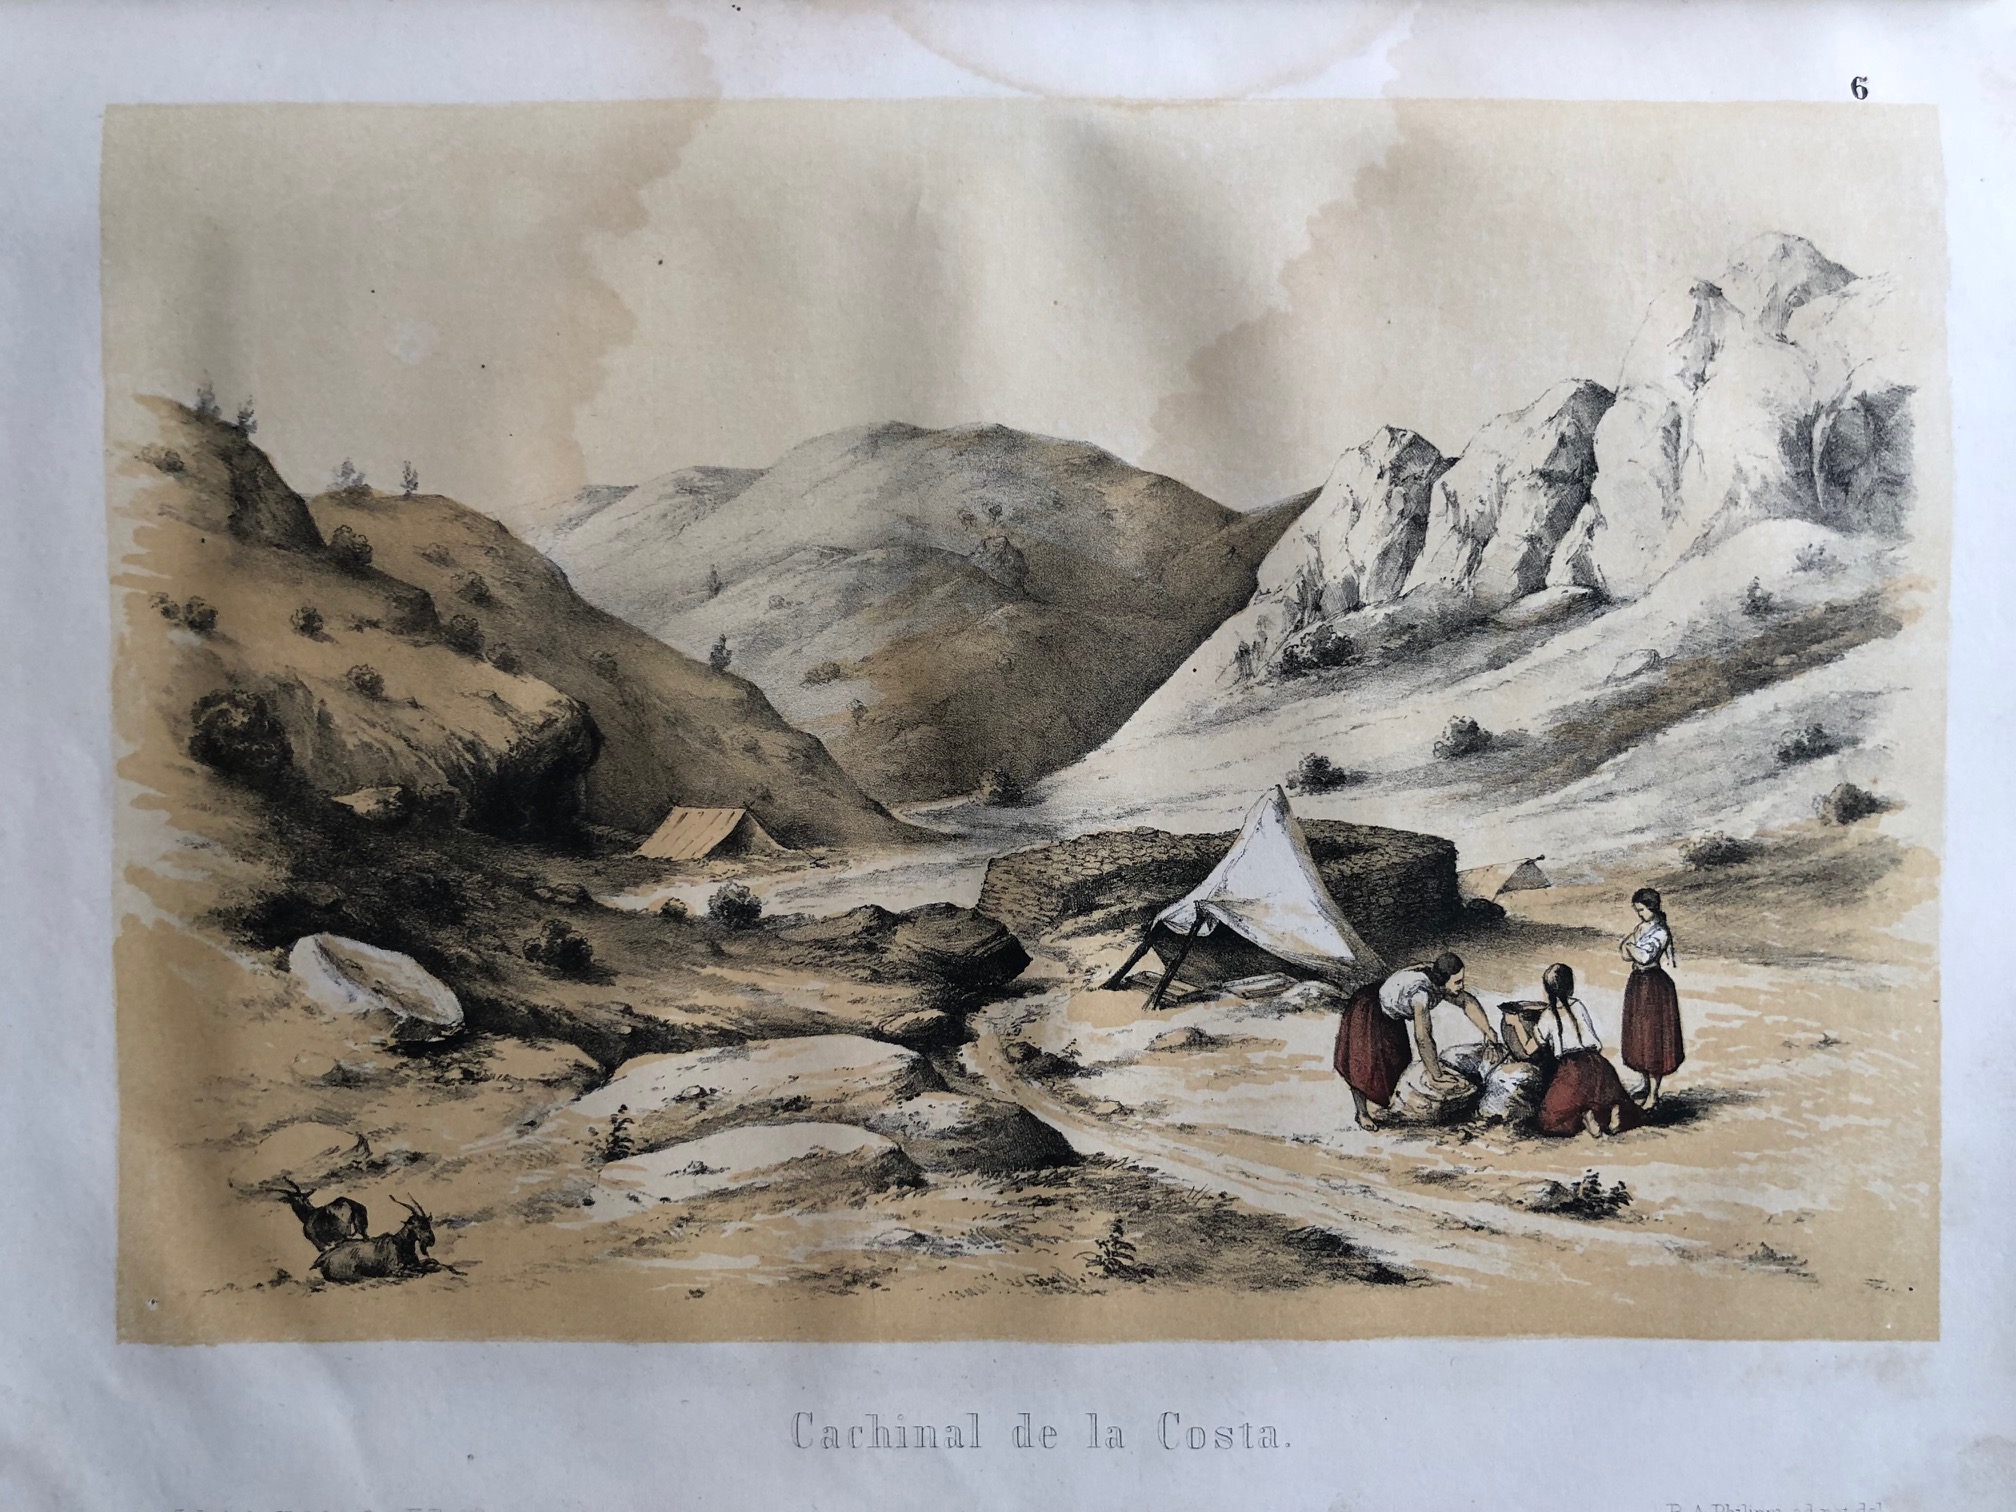 PHILIPPI, Dr. R. A. Viage al Desierto de Atacama hecho de orden del Gobierno de Chile en el verano 1853 – 1854.